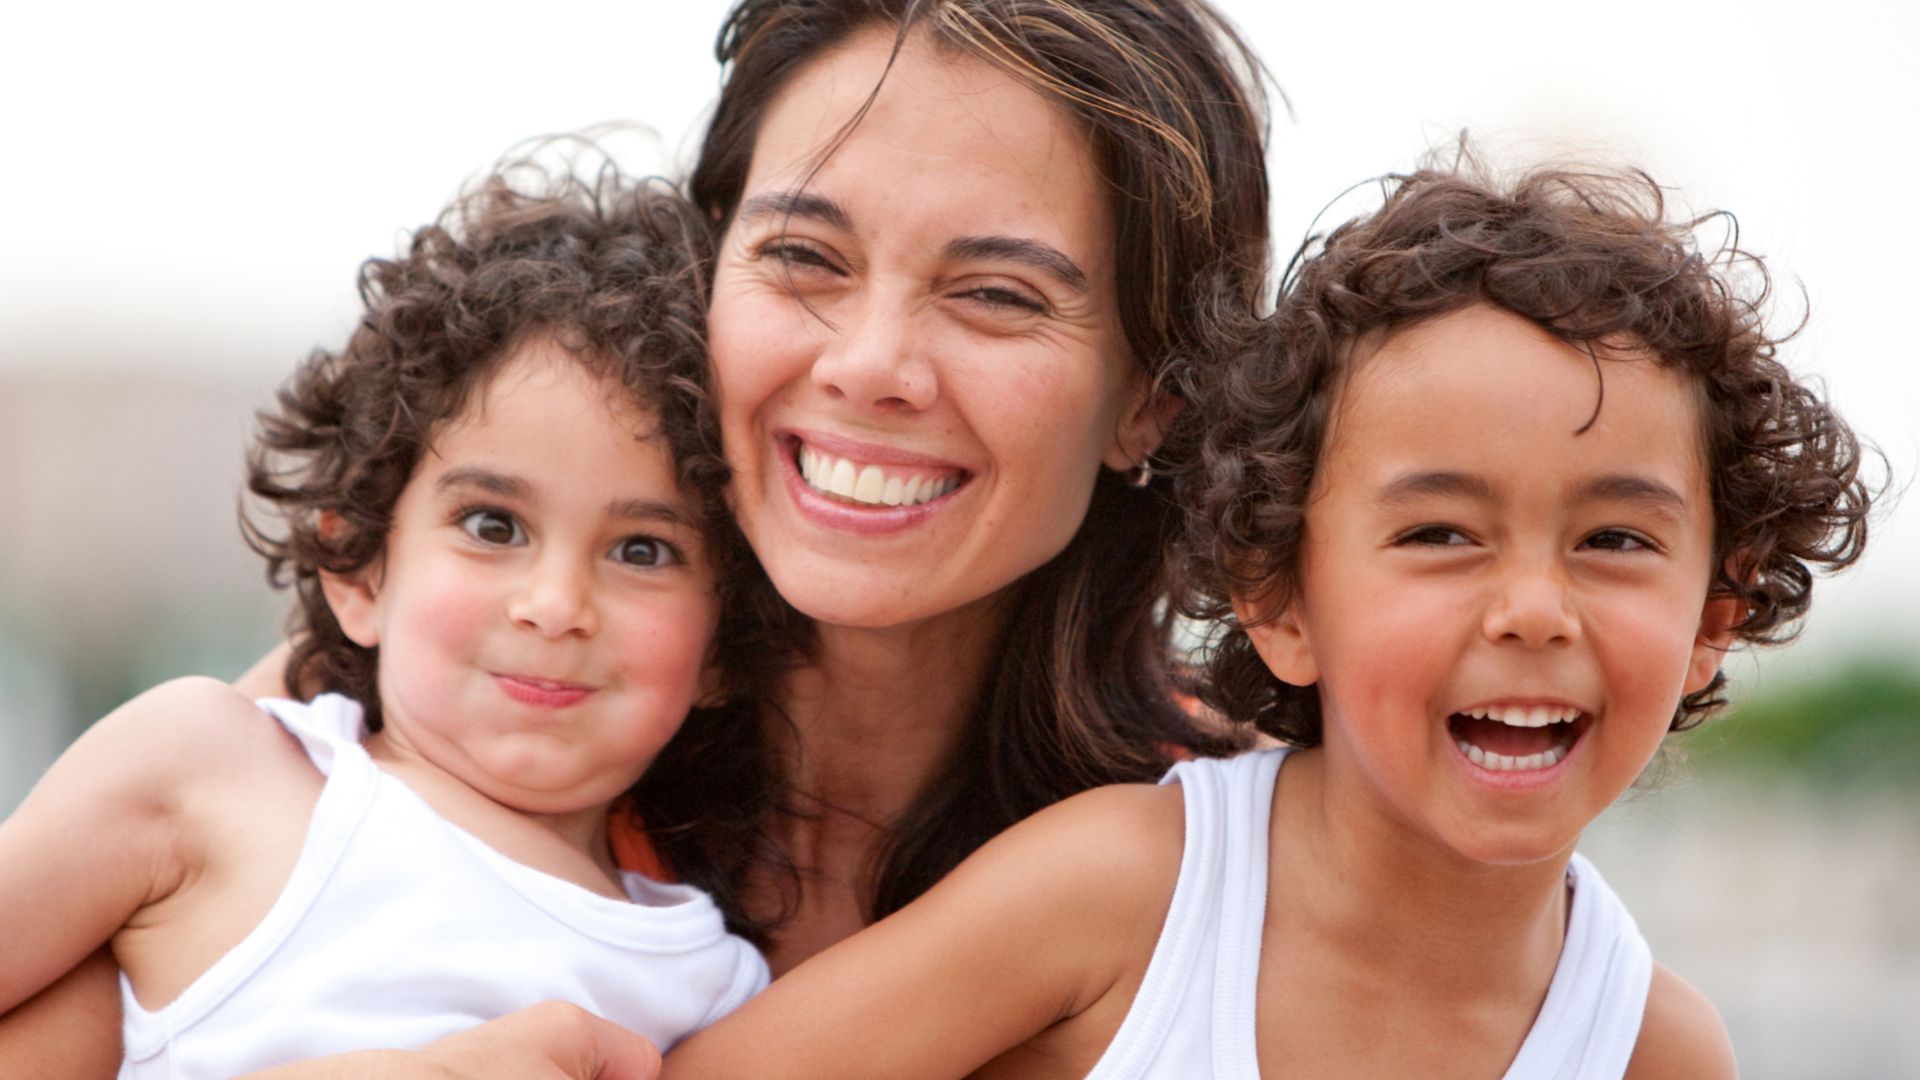 Imagem de uma mãe sorridente posicionada no centro da imagem com os seus dois filhos.